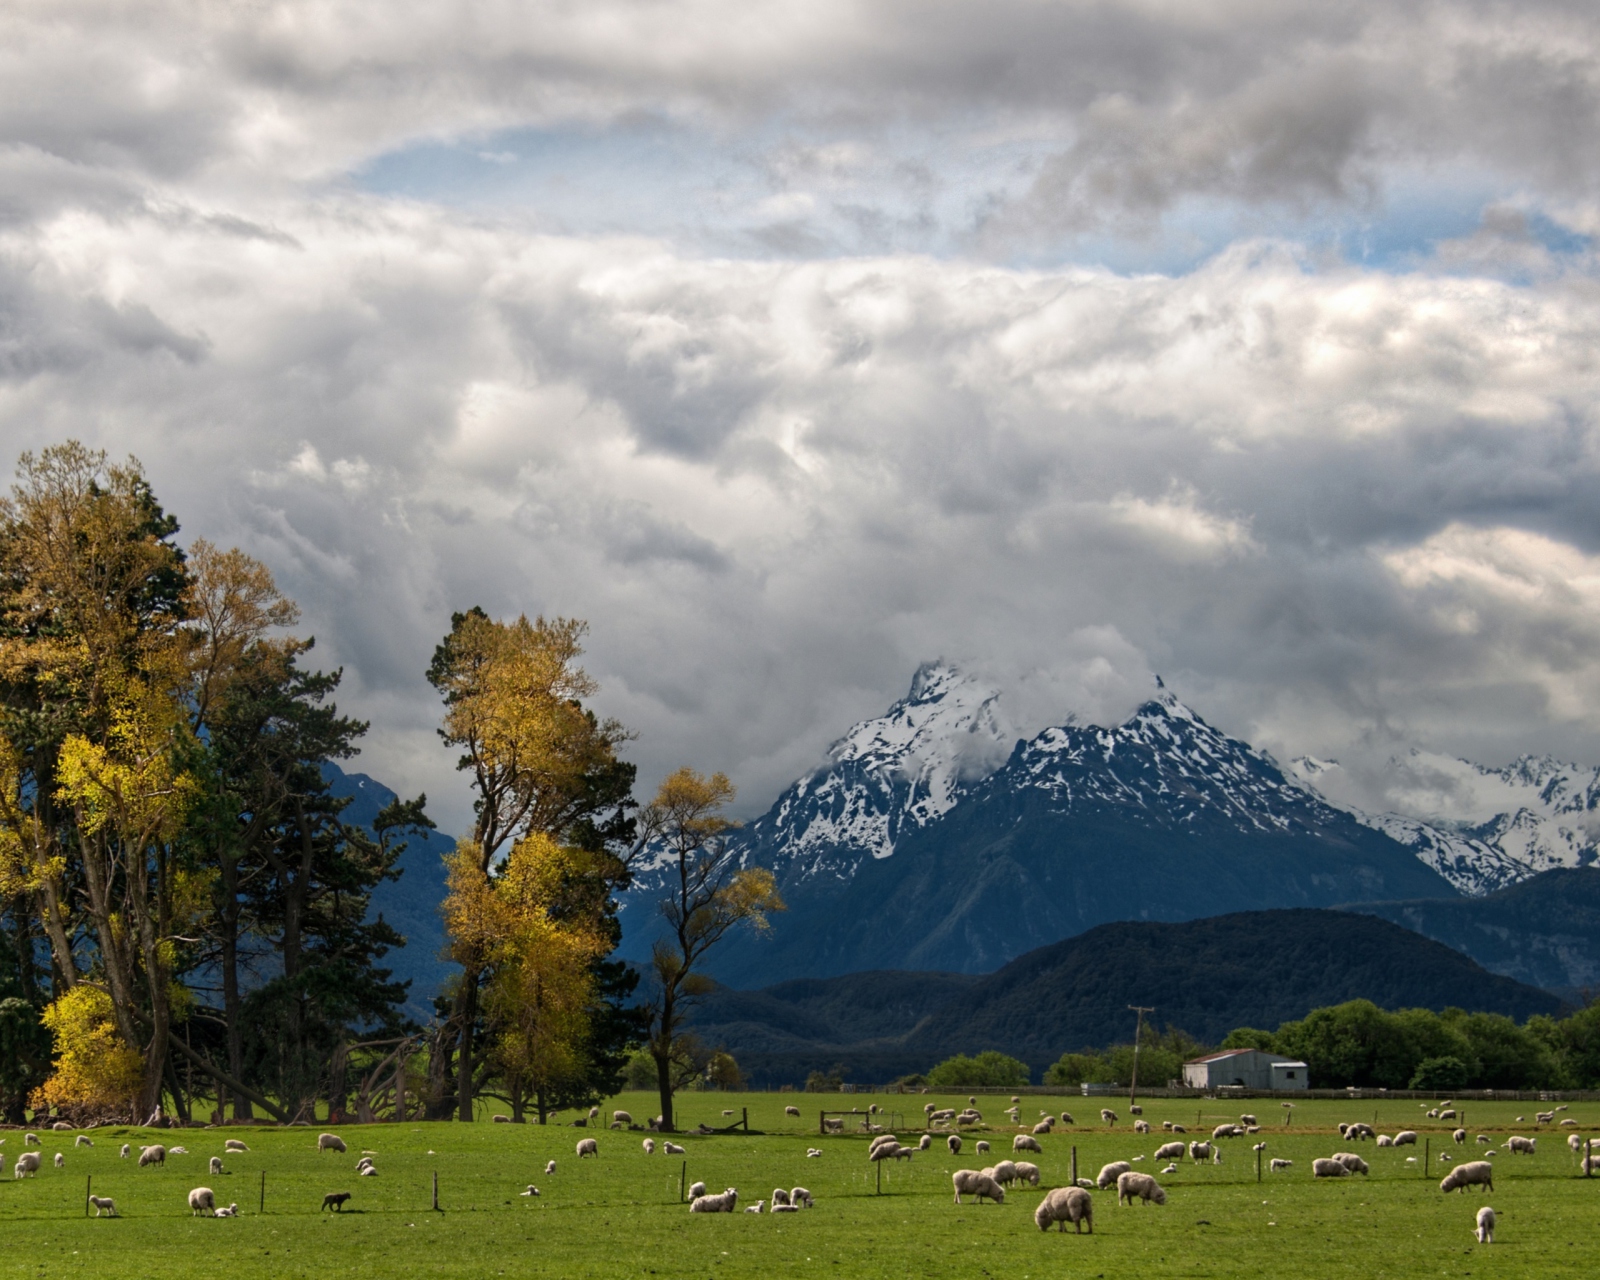 Обои Sheeps On Green Field And Mountain View 1600x1280